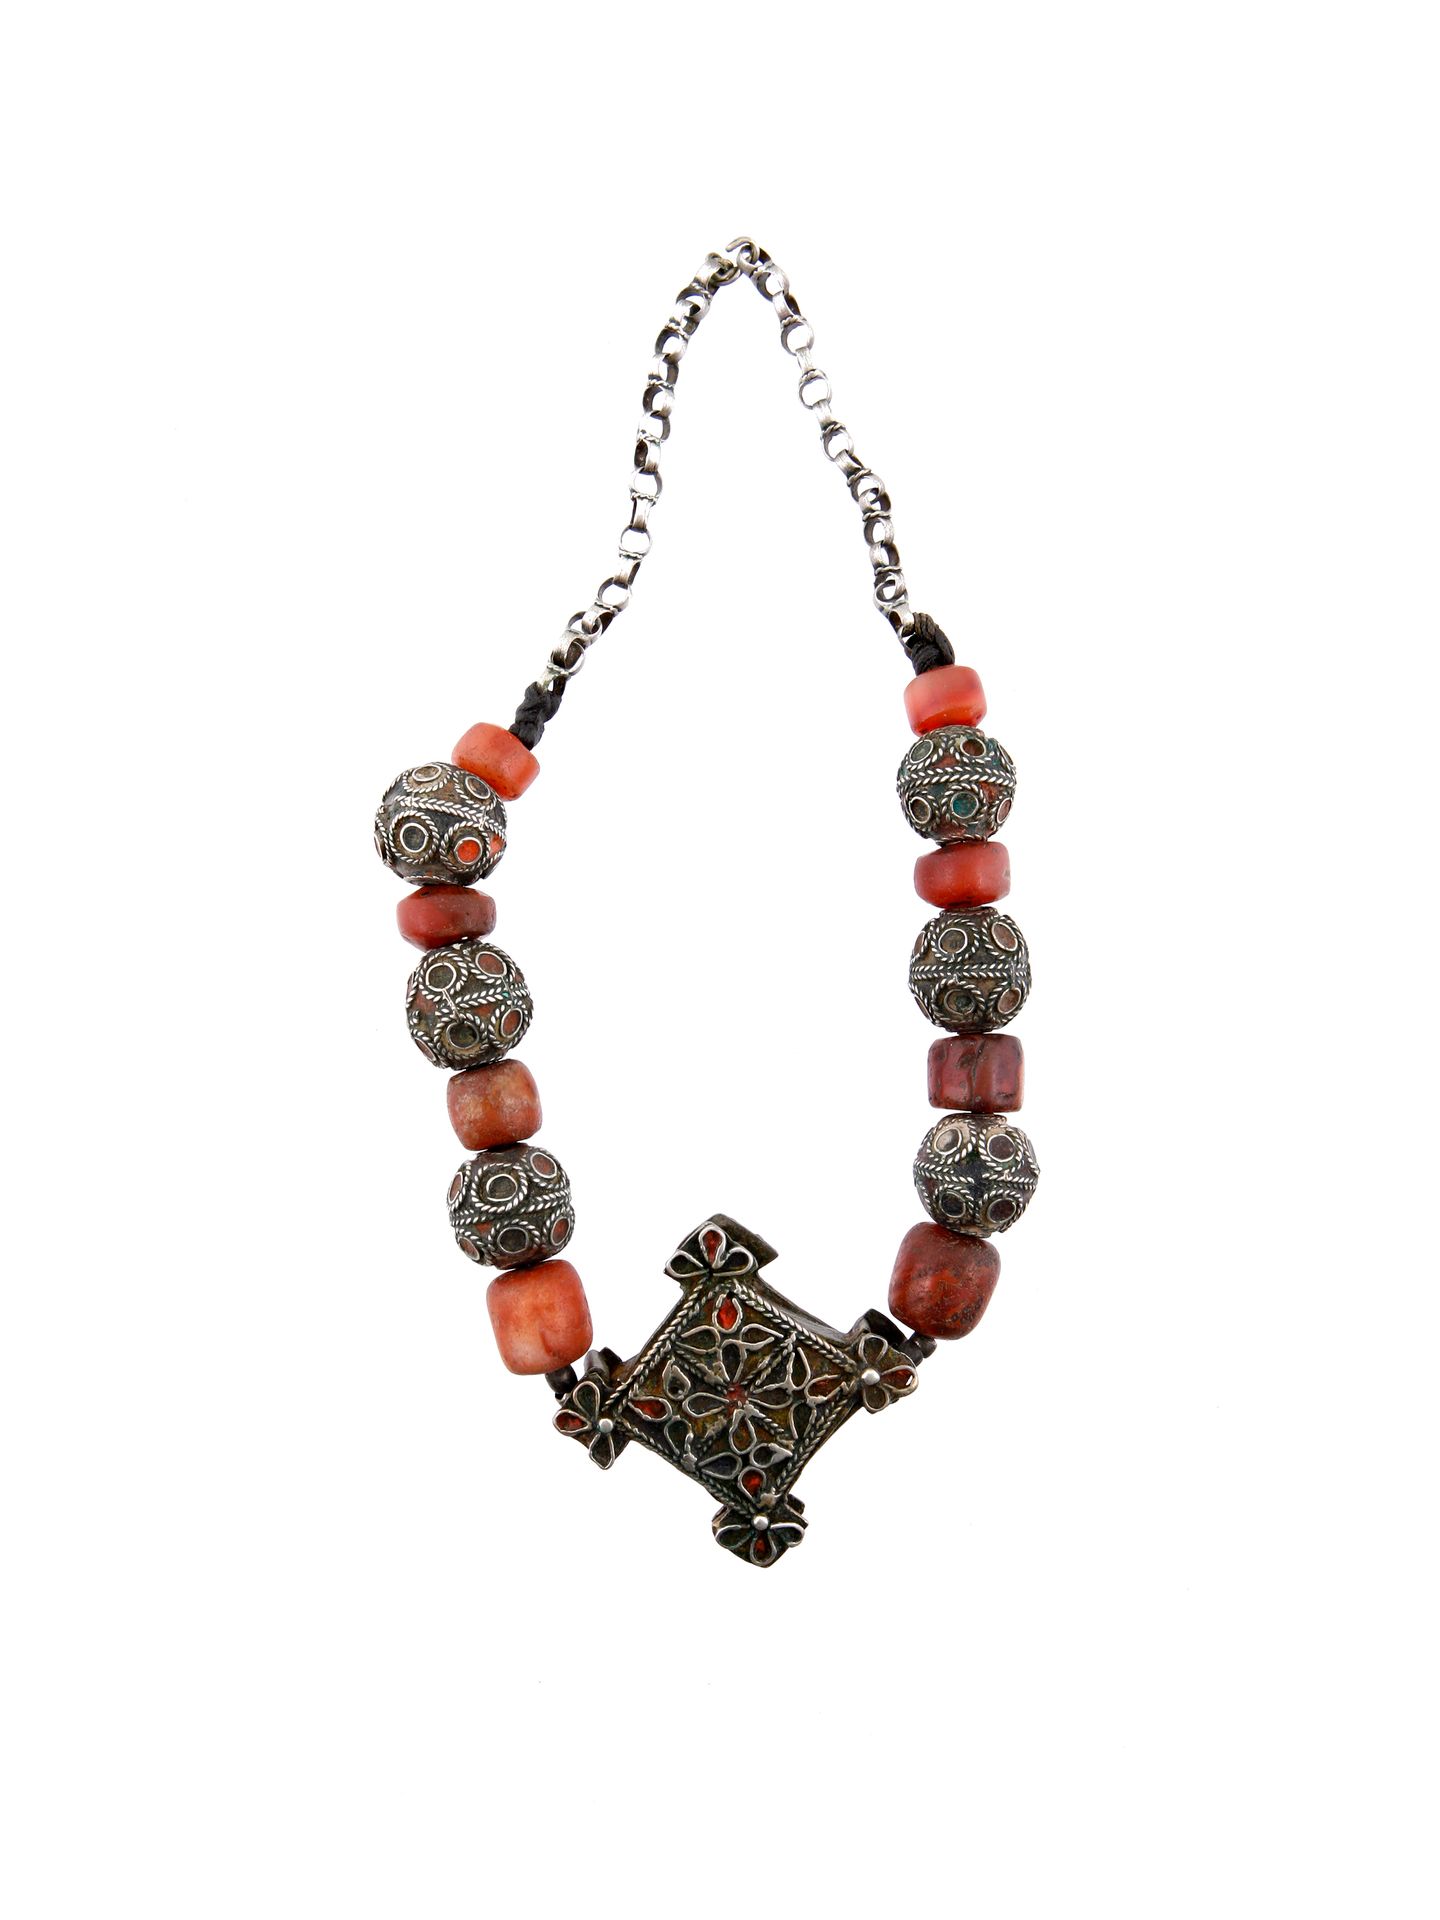 A Berber Necklace with a central Pendant Collana con ciondolo centrale

Berbero,&hellip;